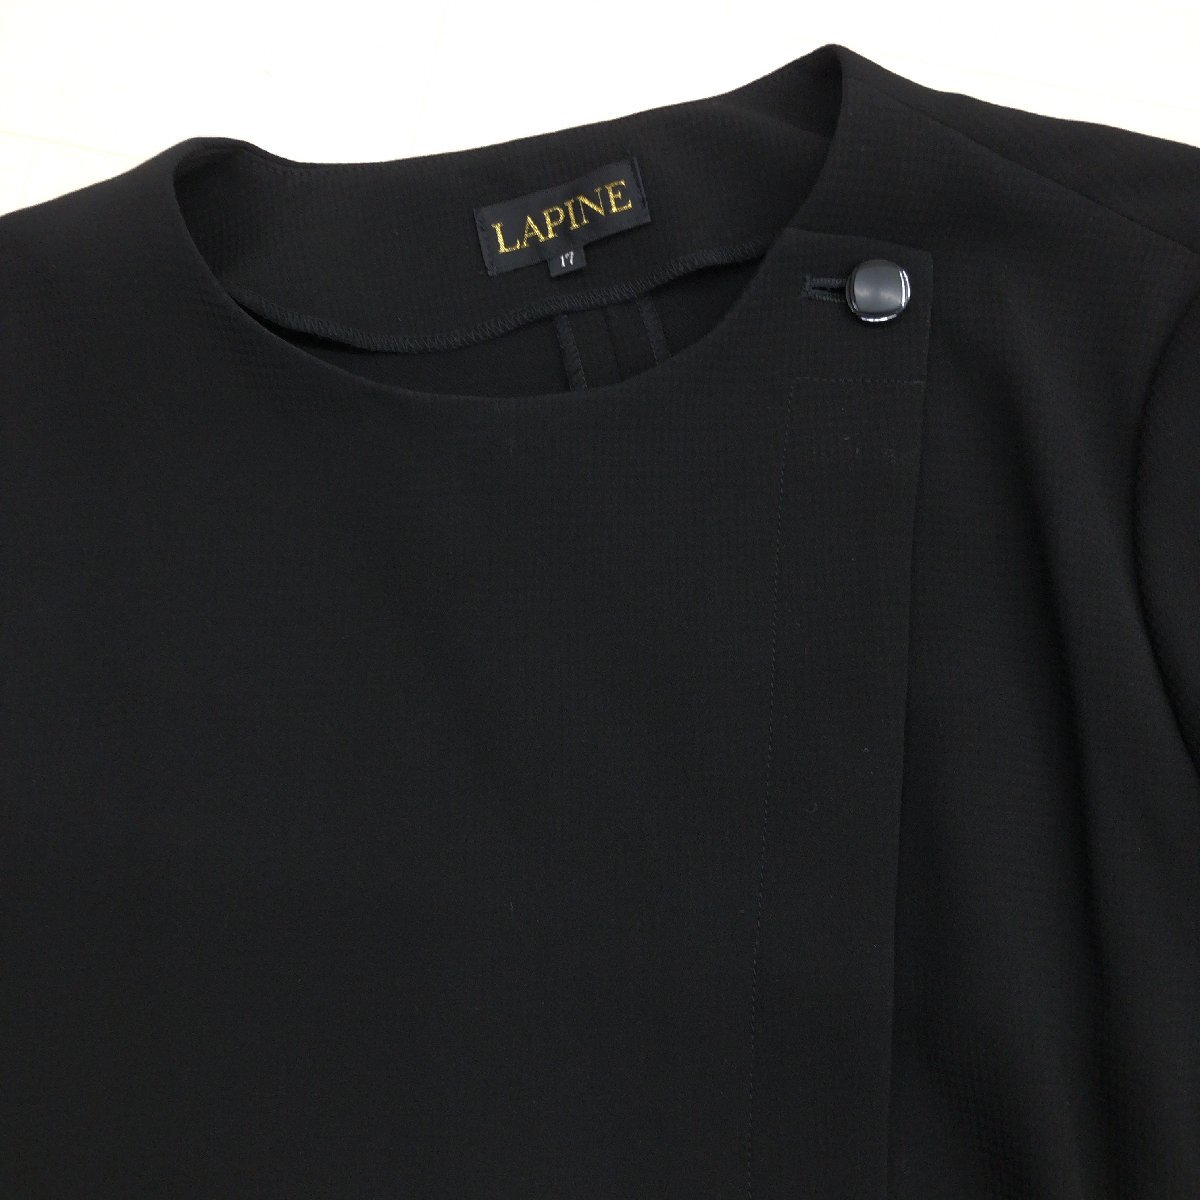 ●LAPINE ラピーヌ 3ピース フォーマルスーツ 上下セットアップ 17(3XL) 黒 ブラック ロングスカート ゆったり 大きいサイズ 4L 日本製_画像6